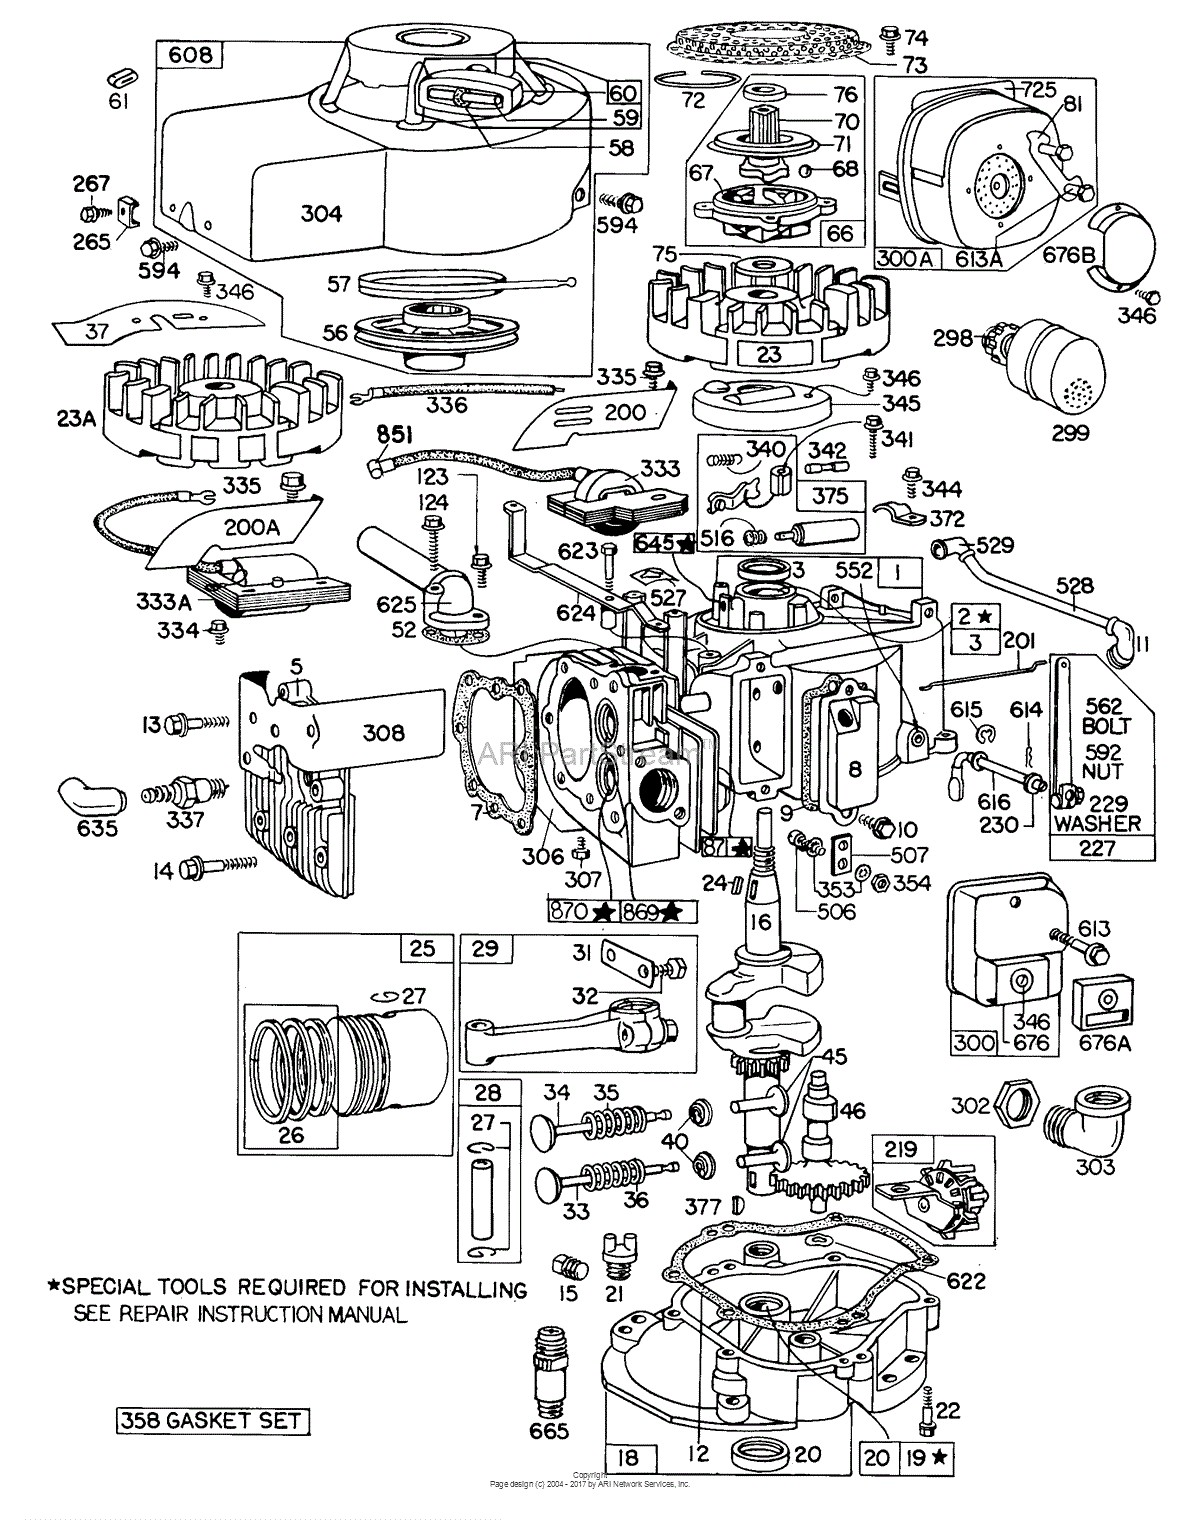 Briggs and Stratton Parts Diagrams Briggs and Stratton 4001 08 Parts Diagram for Plete Engine assembly